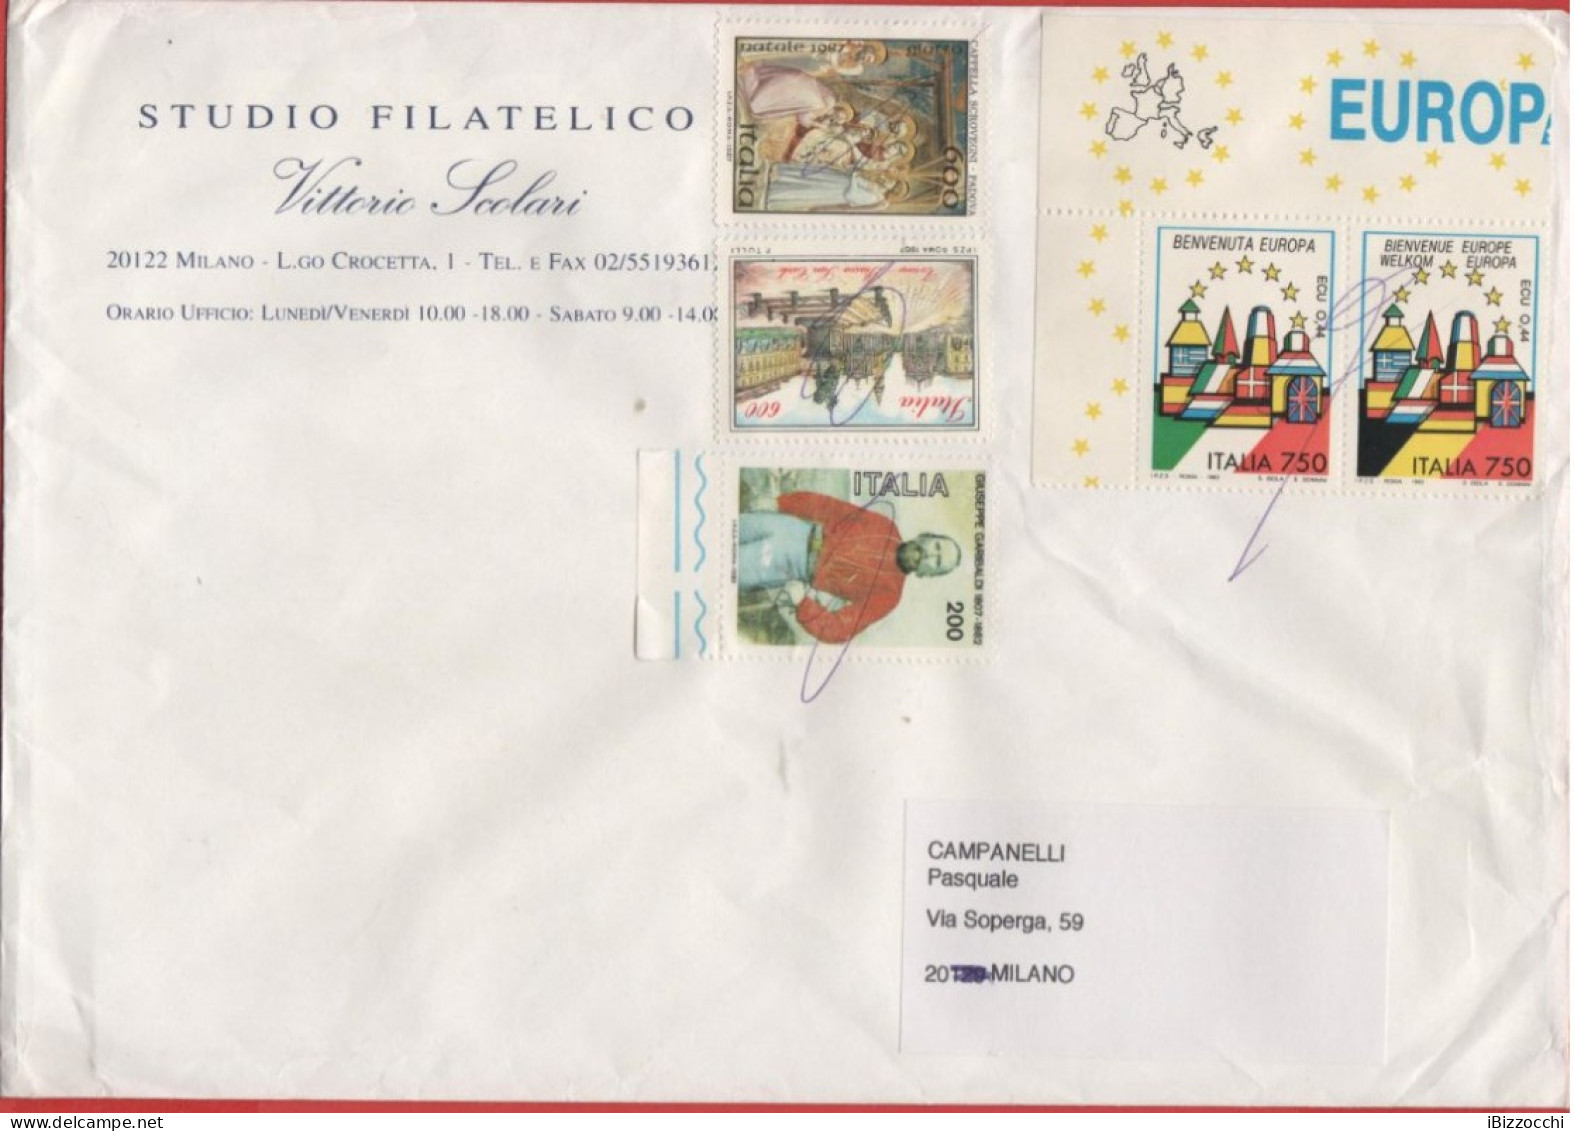 ITALIA - Storia Postale Repubblica - 2011 (Annullo A Penna) - 5 Francobolli Dal 1982 Al 1993 - Studio Filatelico Scolari - 2011-20: Marcophilie